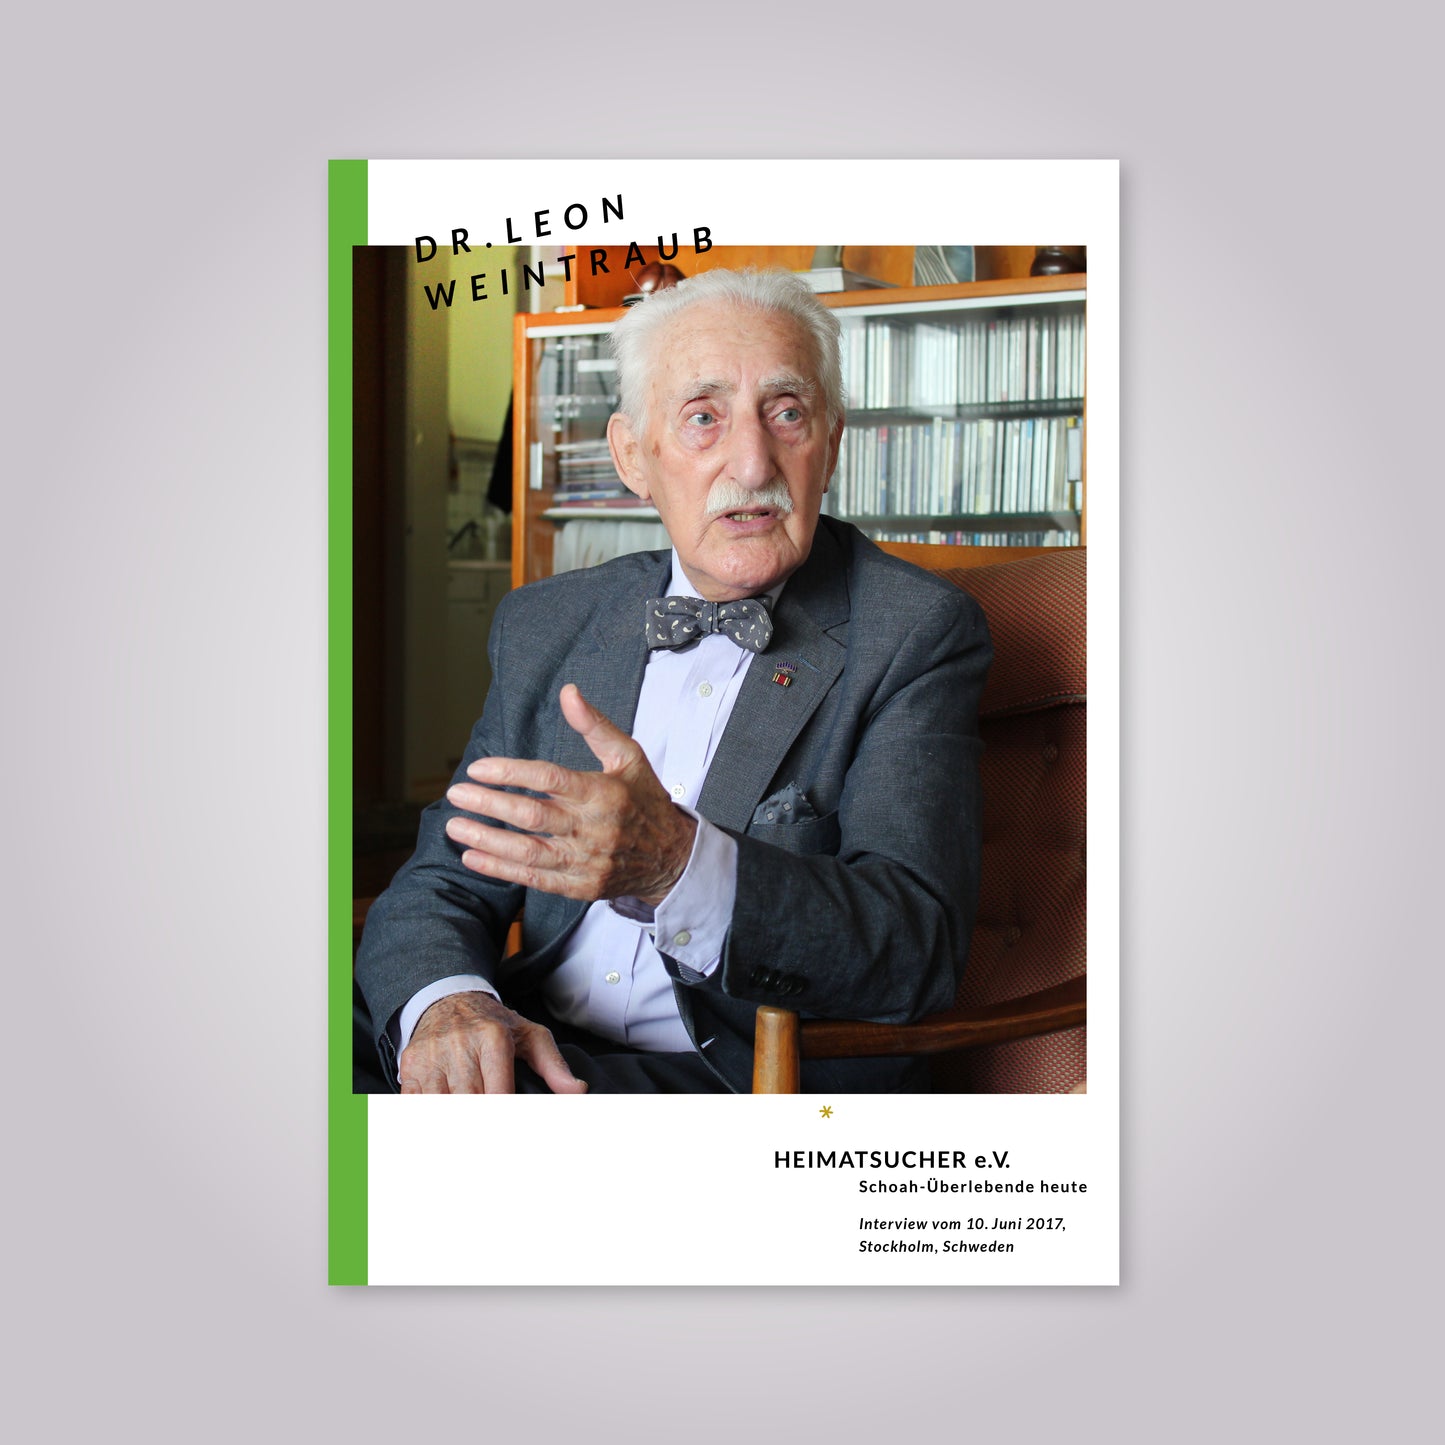 Magazin-Cover: Ein alter Mann mit weißen Haaren und einem Schnurrbart trägt einen Anzug und Fliege.